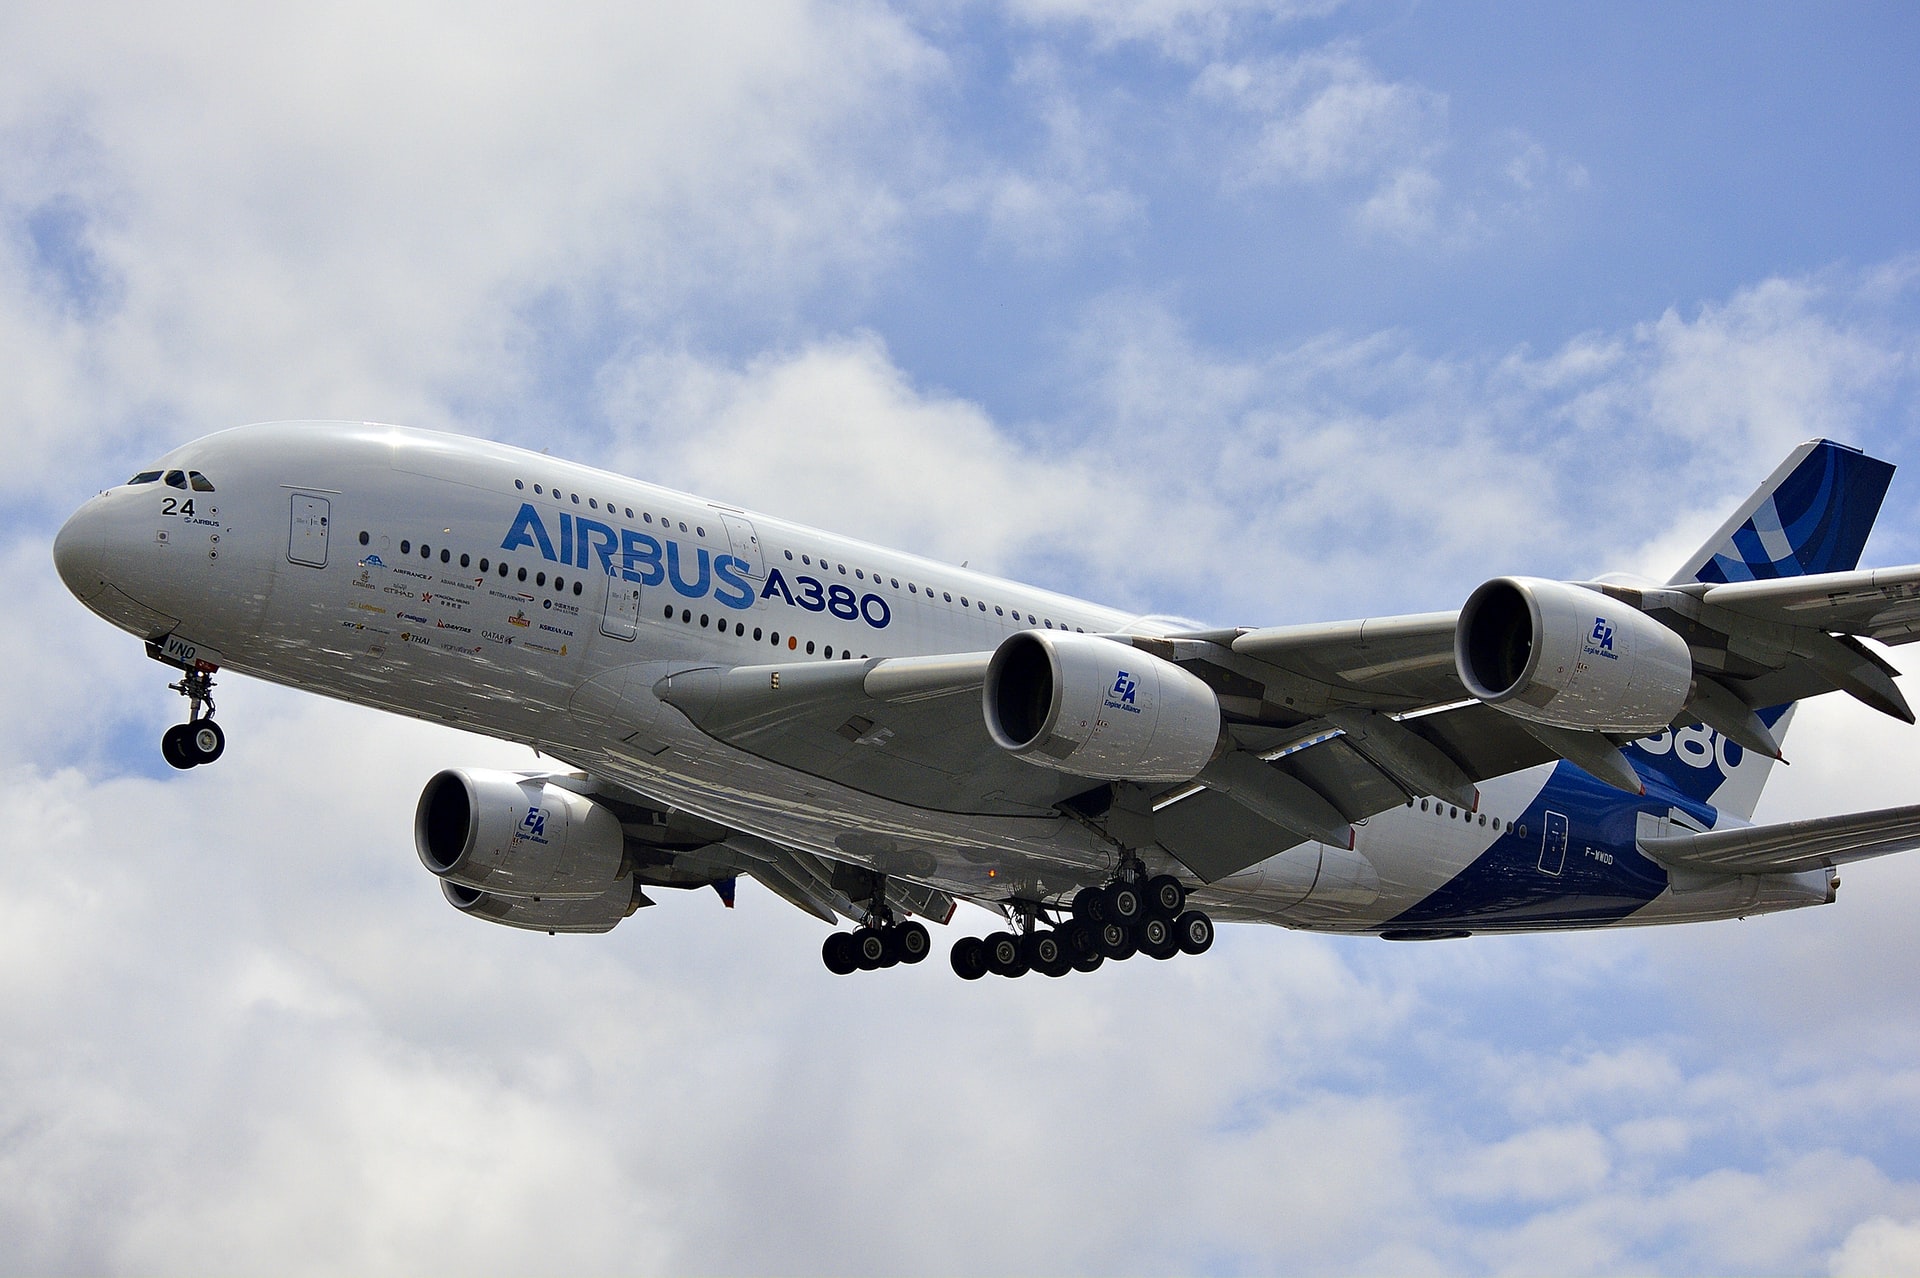 daniel eledut ypg01iw0trg unsplash - Airbus испытала чистое авиационное топливо SAF на самом большом пассажирском самолете A380